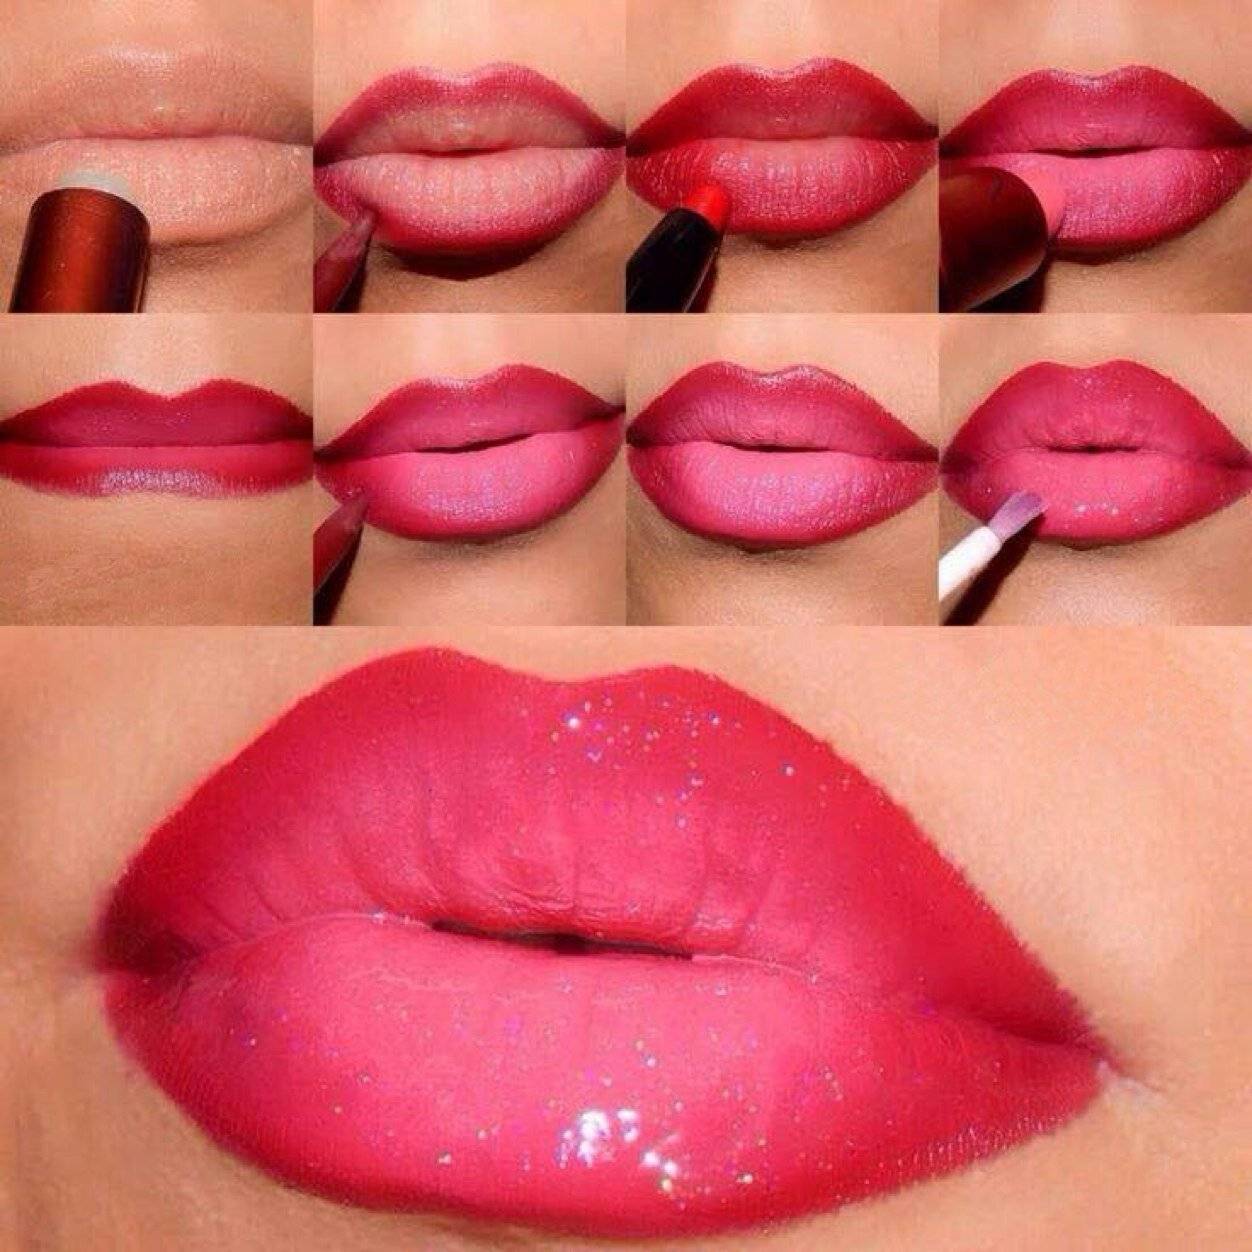 Как красить губы красной помадой